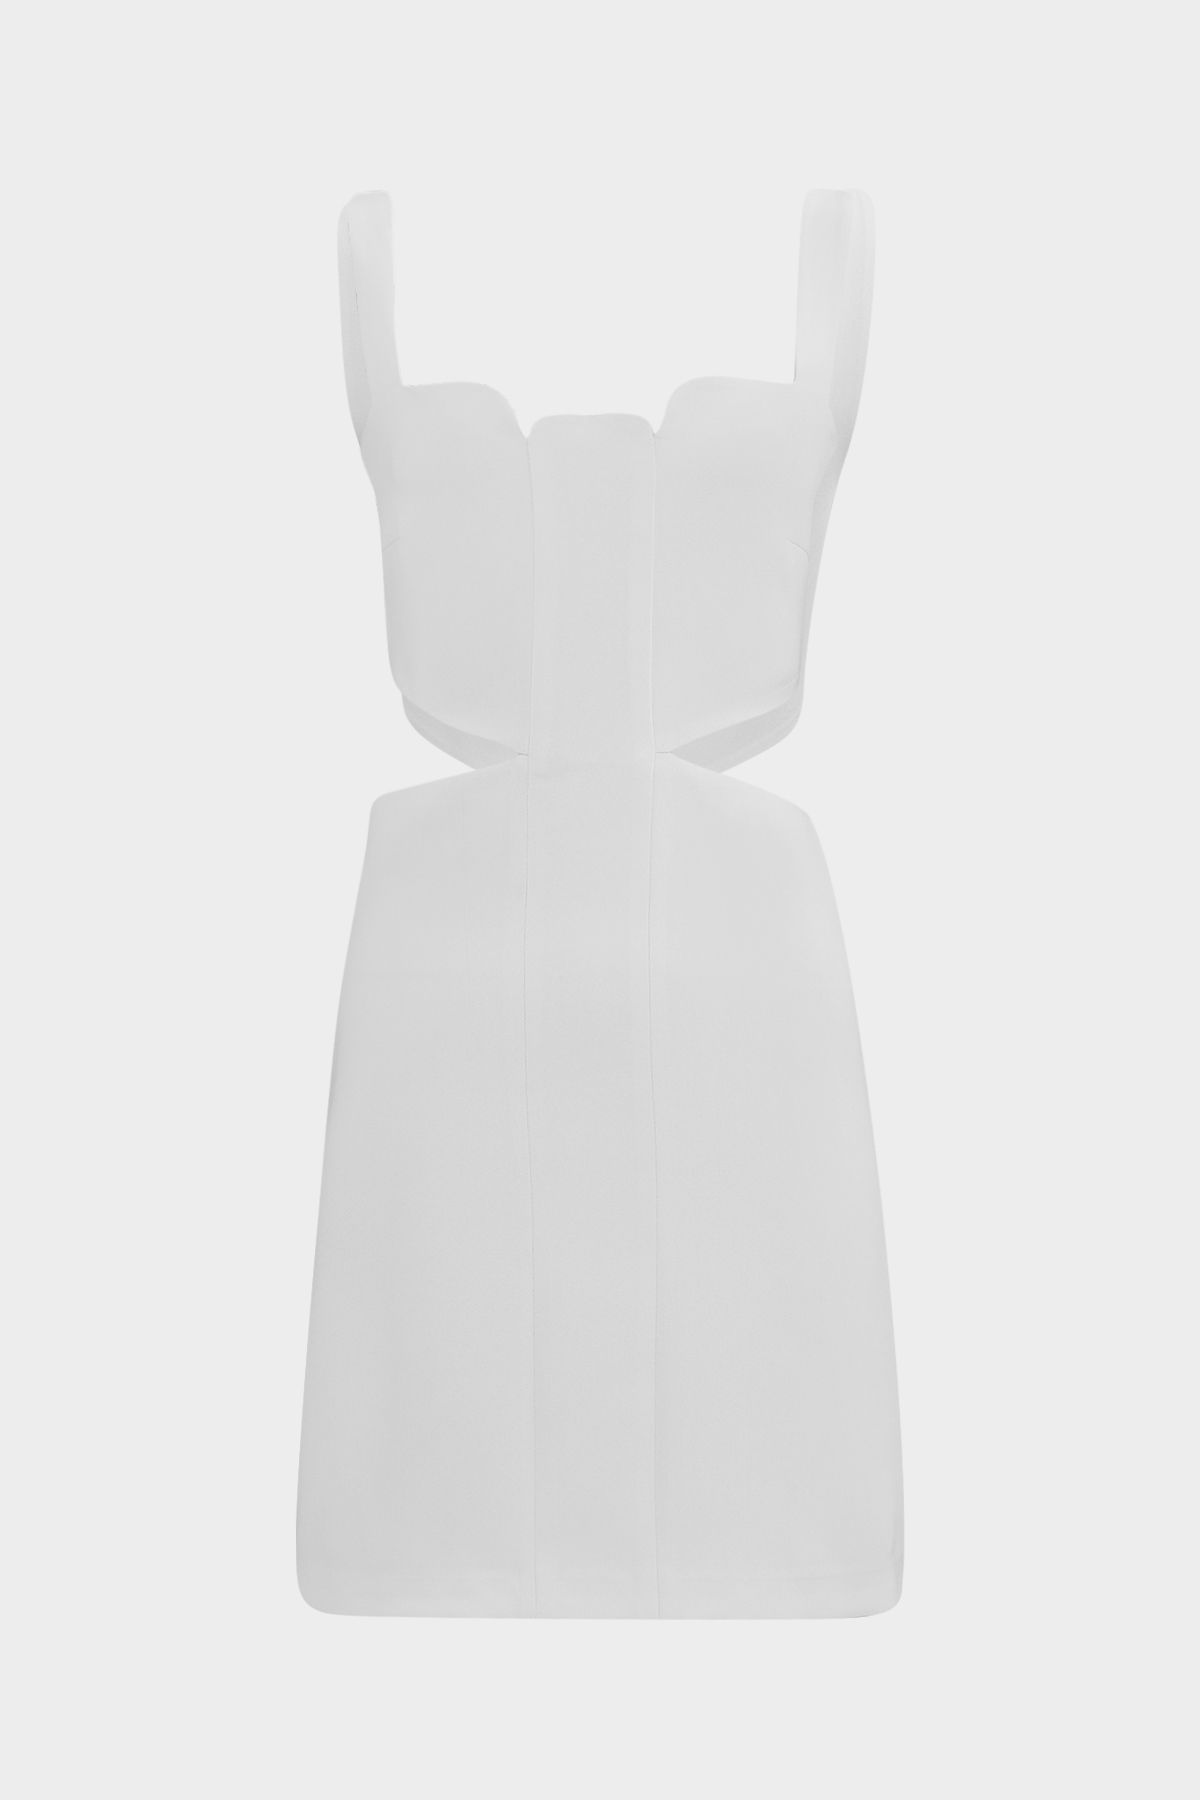 Açelya Okcu Premium Askılı Yanı Pencereli Mini Dokuma Kadın Elbise